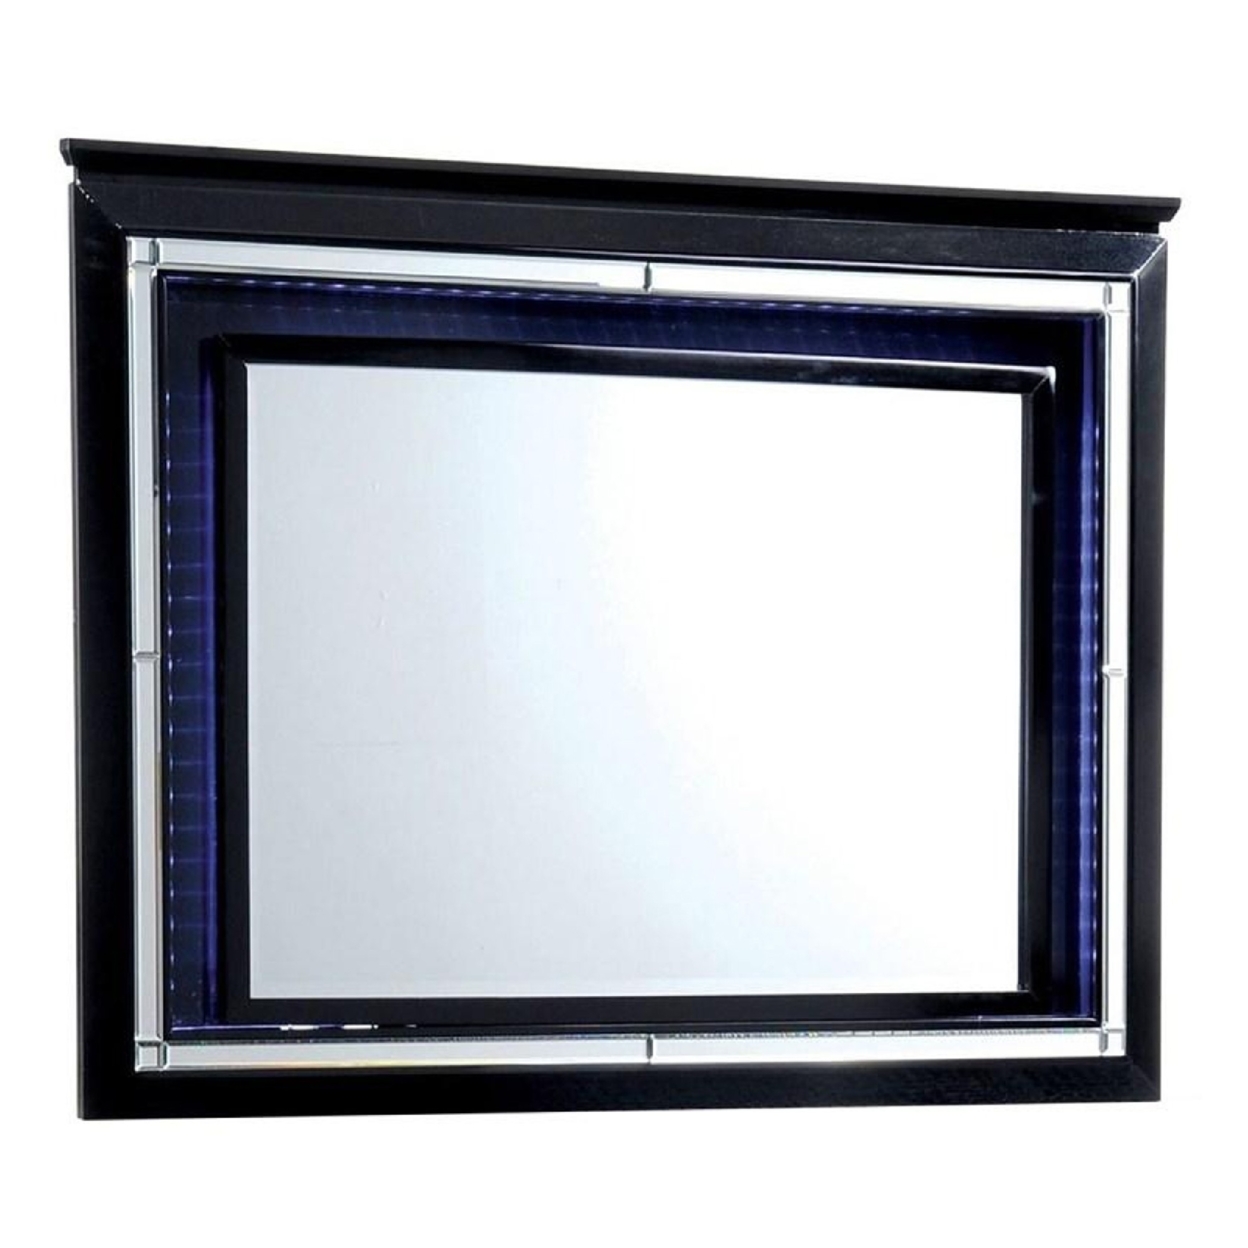 Bellaova Contemporary Style Mirror, Black- Saltoro Sherpi